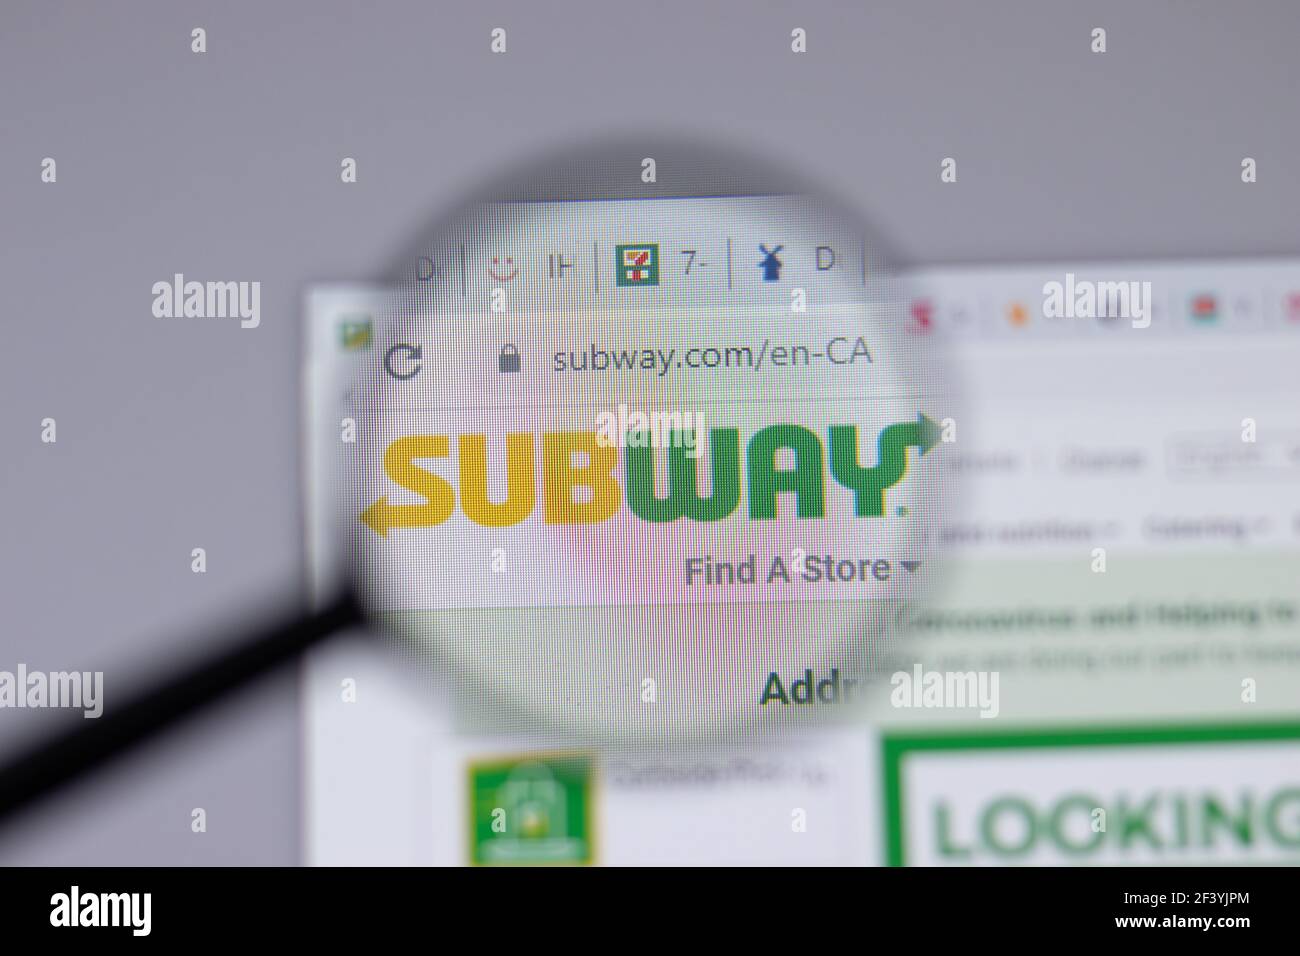 New York, USA - 18 Marzo 2021: Icona del logo della compagnia Subway sul sito, Editoriale illustrativo Foto Stock